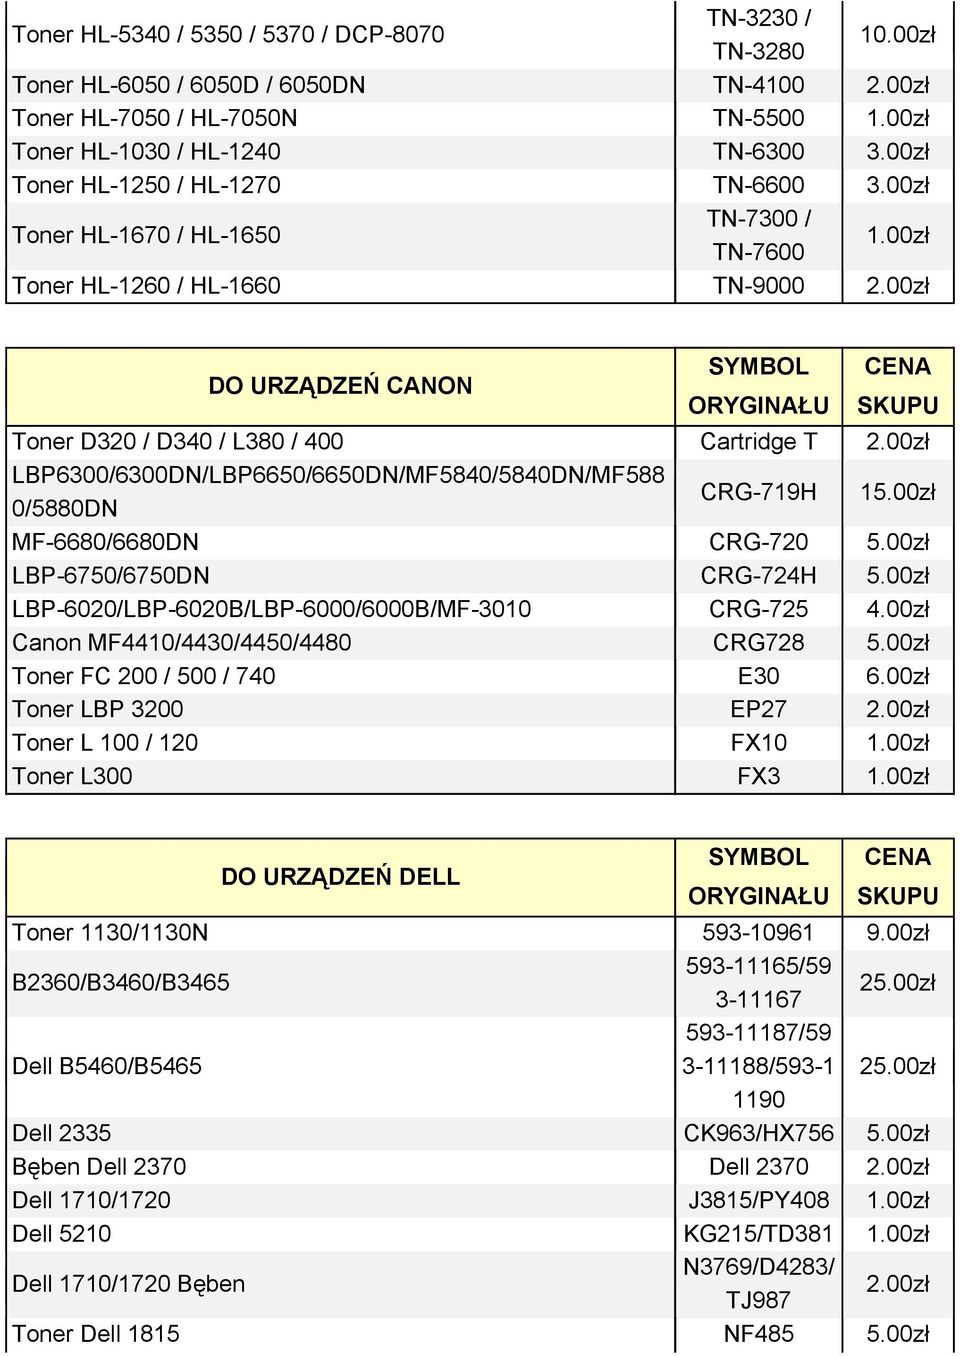 00zł Toner HL-1260 / HL-1660 TN-9000 DO URZĄDZEŃ CANON Toner D320 / D340 / L380 / 400 Cartridge T LBP6300/6300DN/LBP6650/6650DN/MF5840/5840DN/MF588 0/5880DN CRG-719H 15.00zł MF-6680/6680DN CRG-720 5.